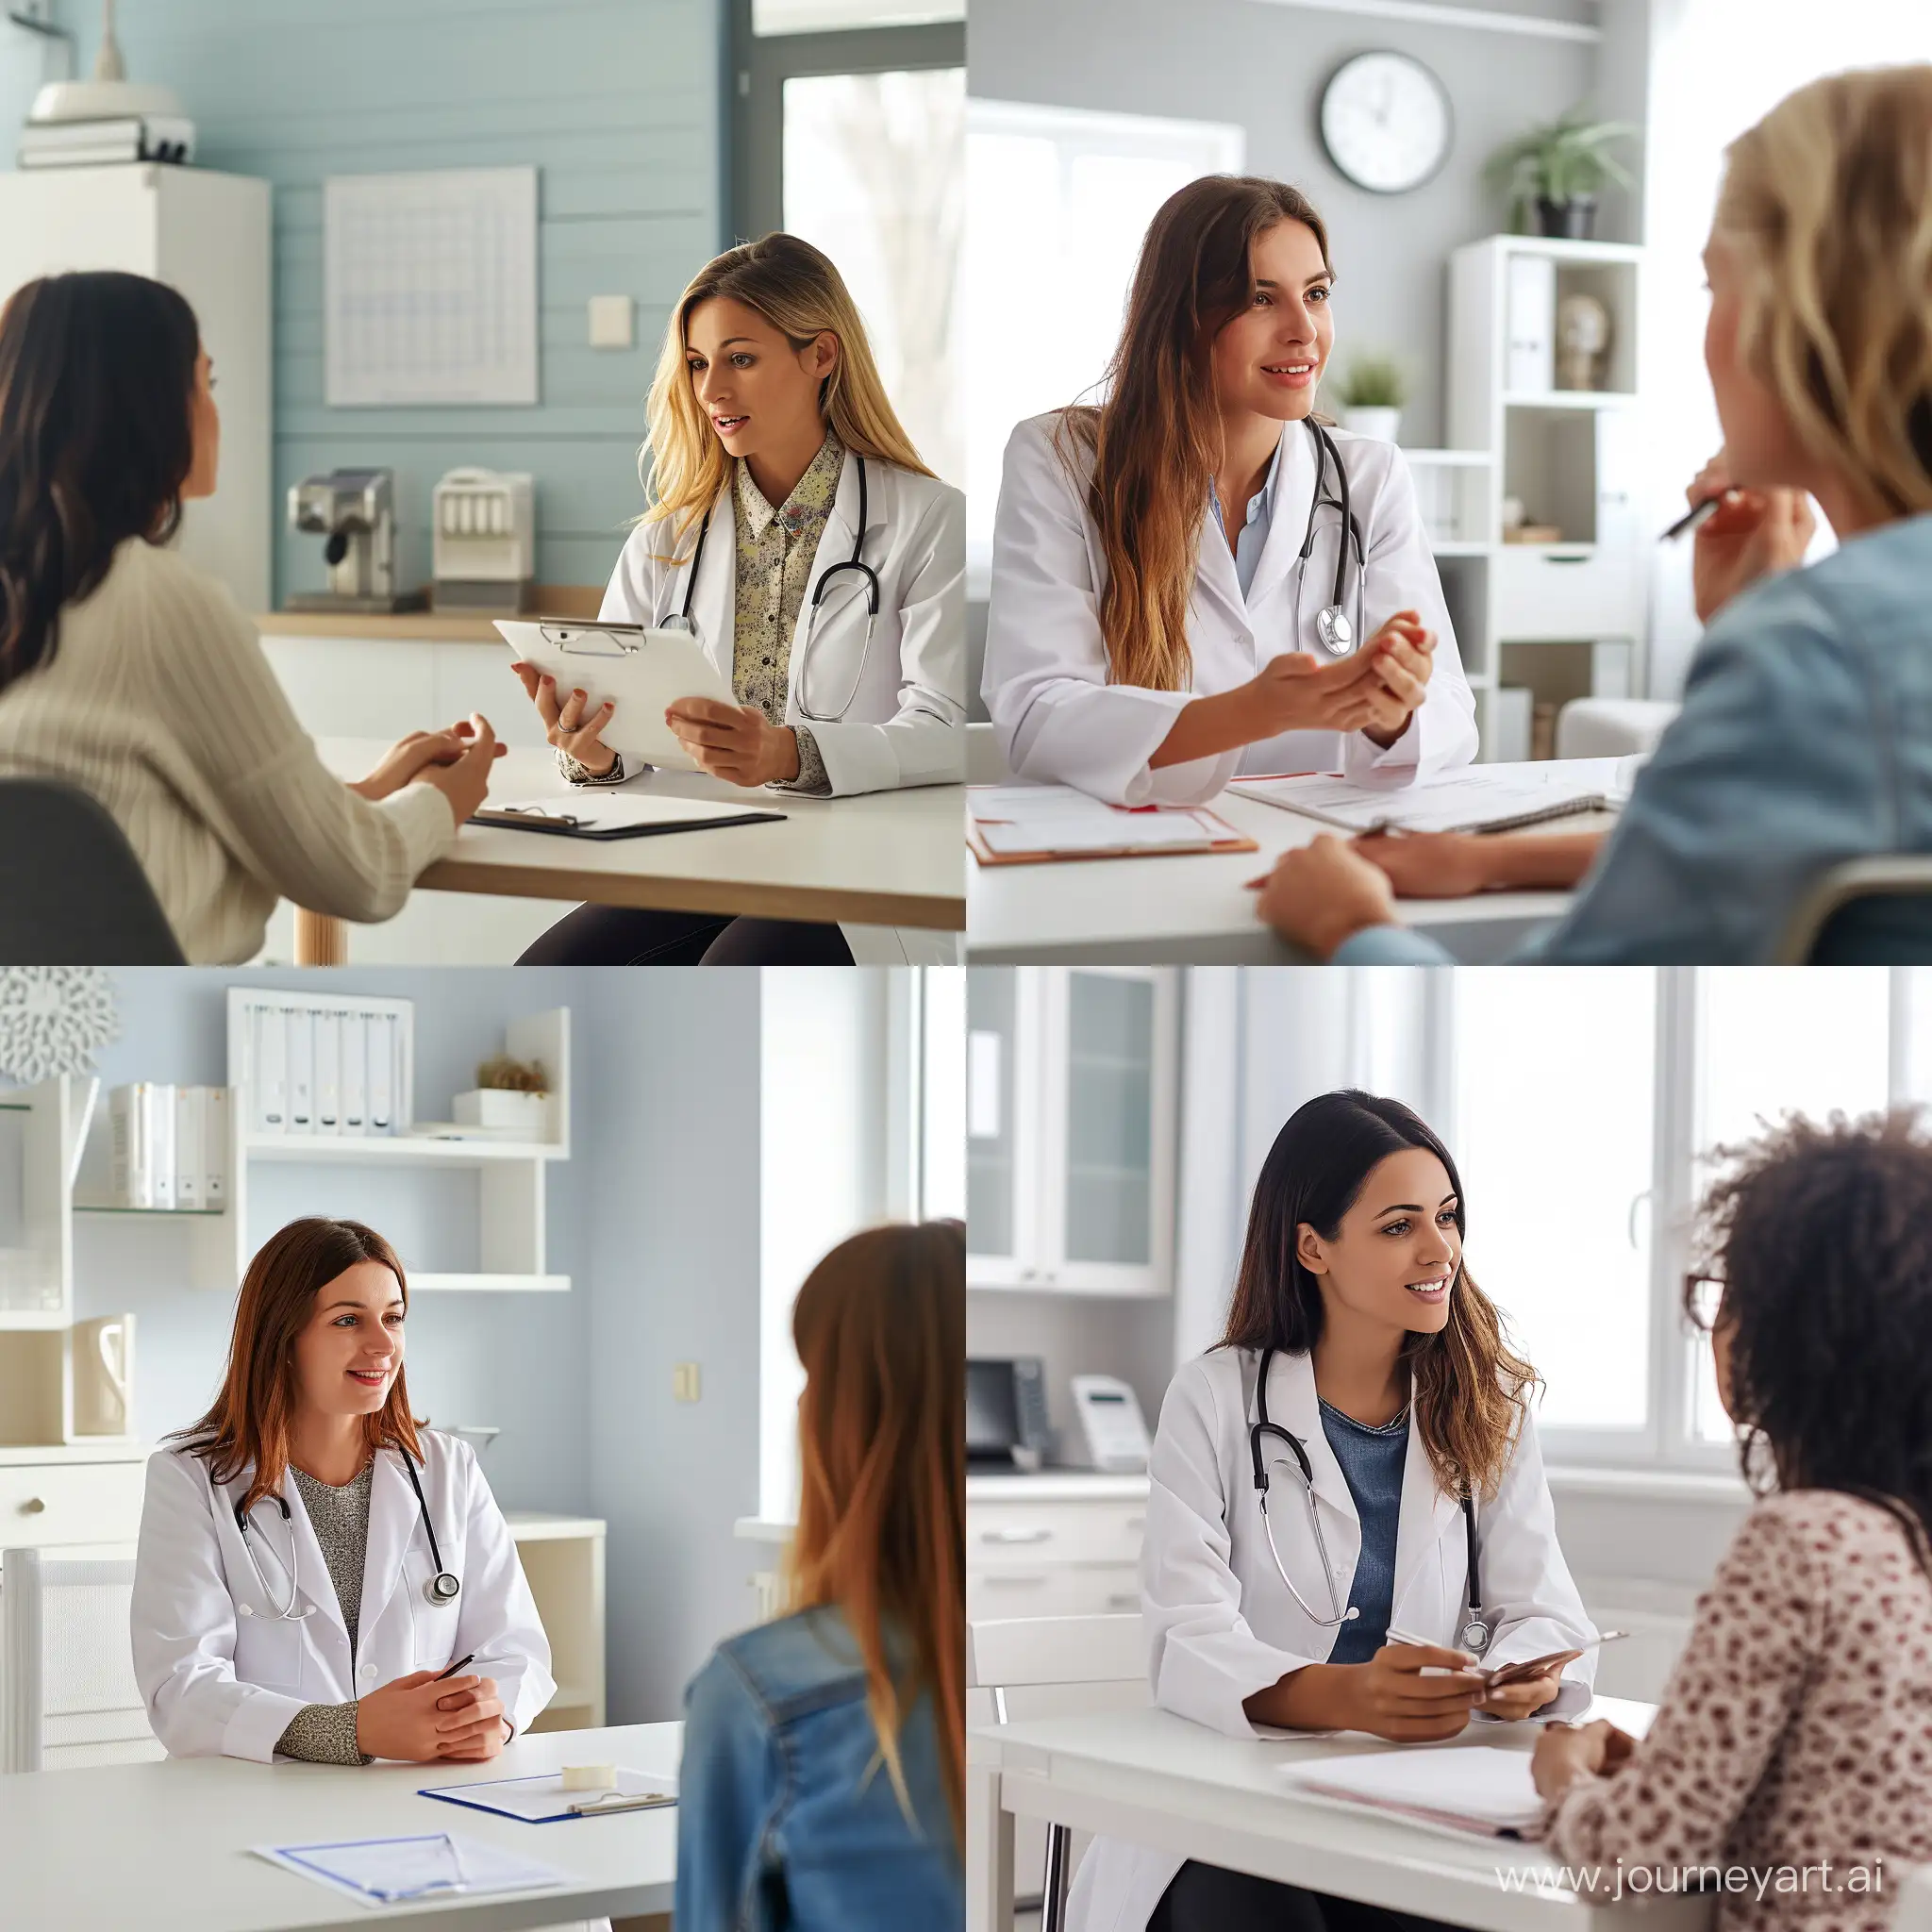 Медицинский кабинет, светлые стены, женщина врач, проводит консультацию пациенту женщине, за столом